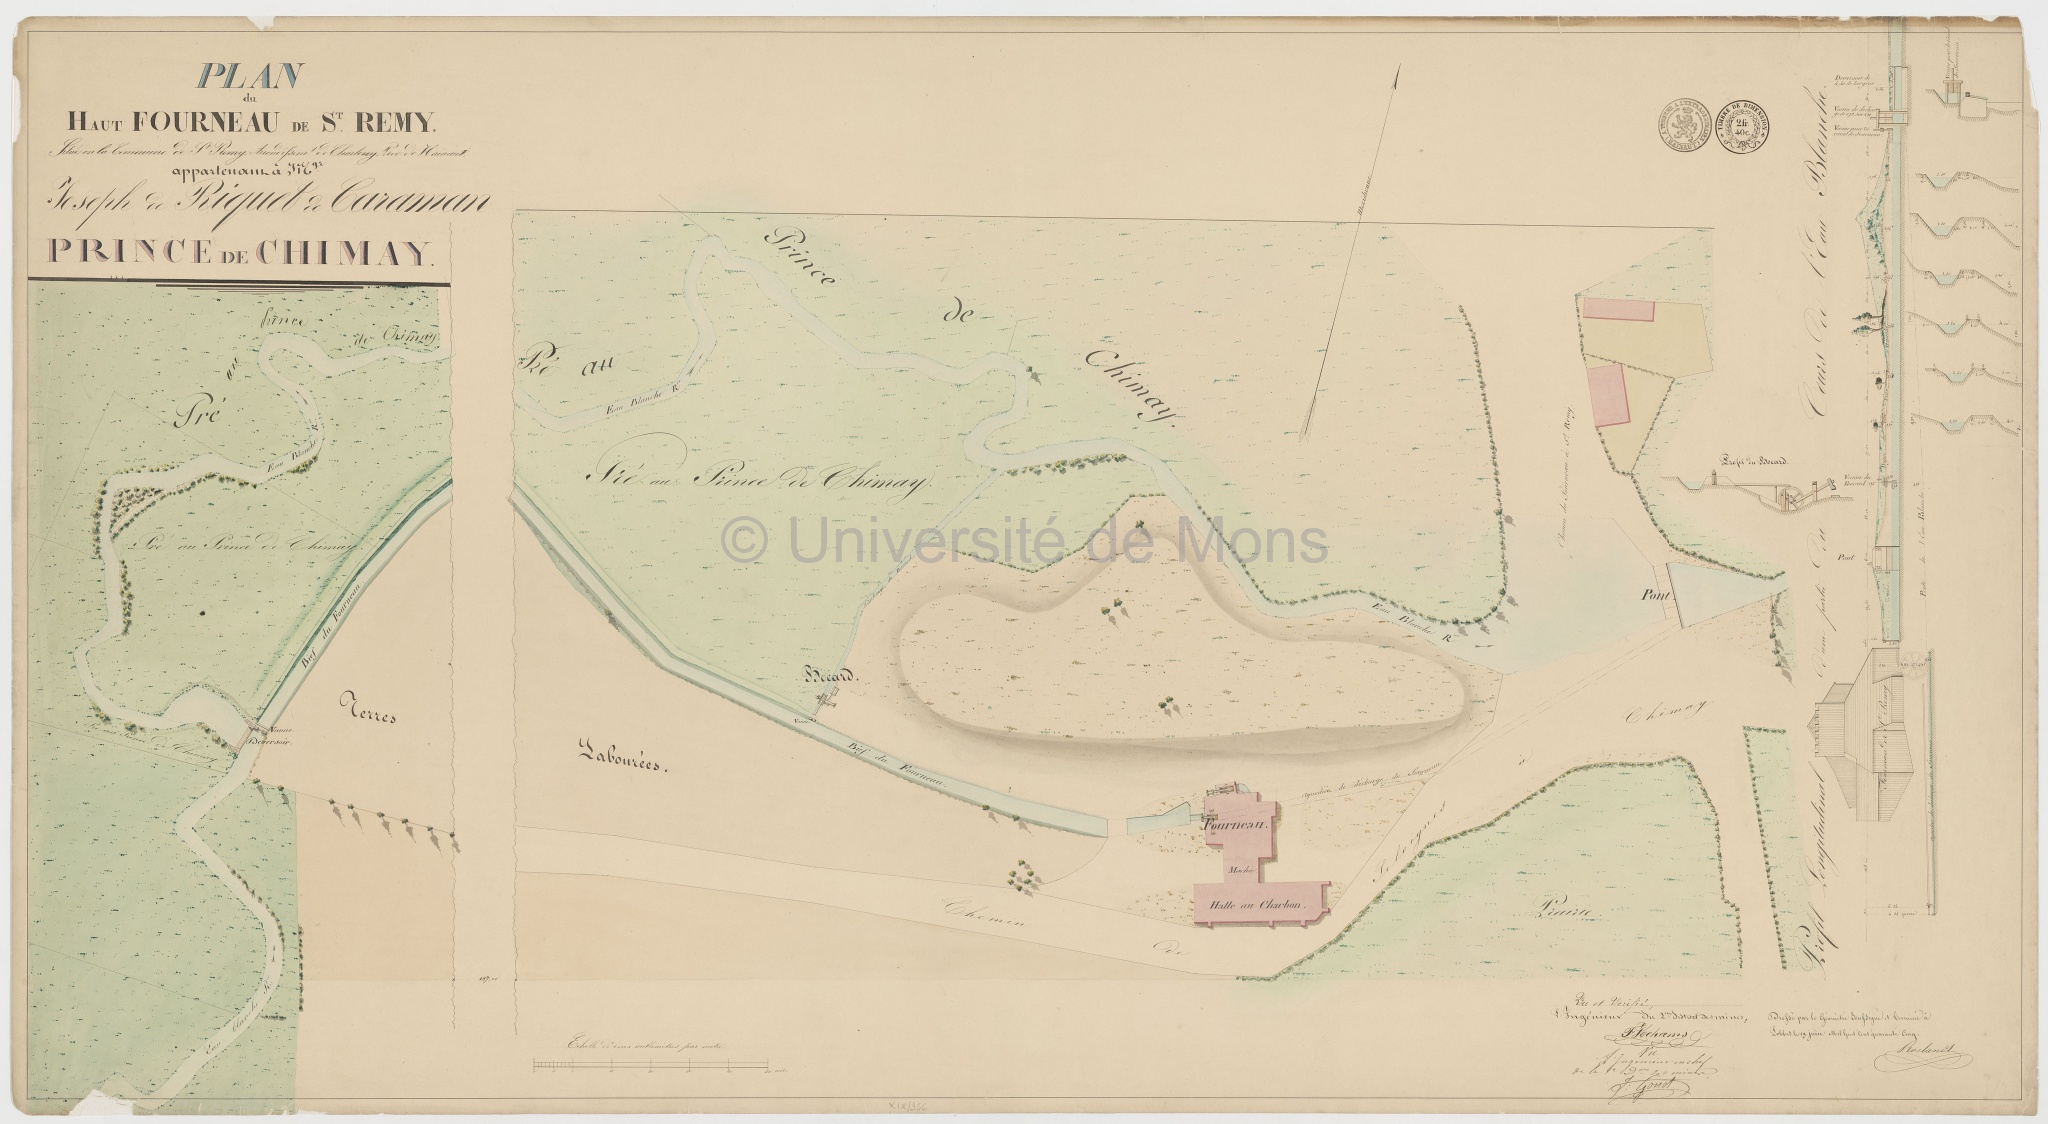 Plan du haut fourneau de Saint-Remy situé en la commune de Saint-Remy… appartenant à Mgr Joseph Riquet de Caraman prince de Chimay